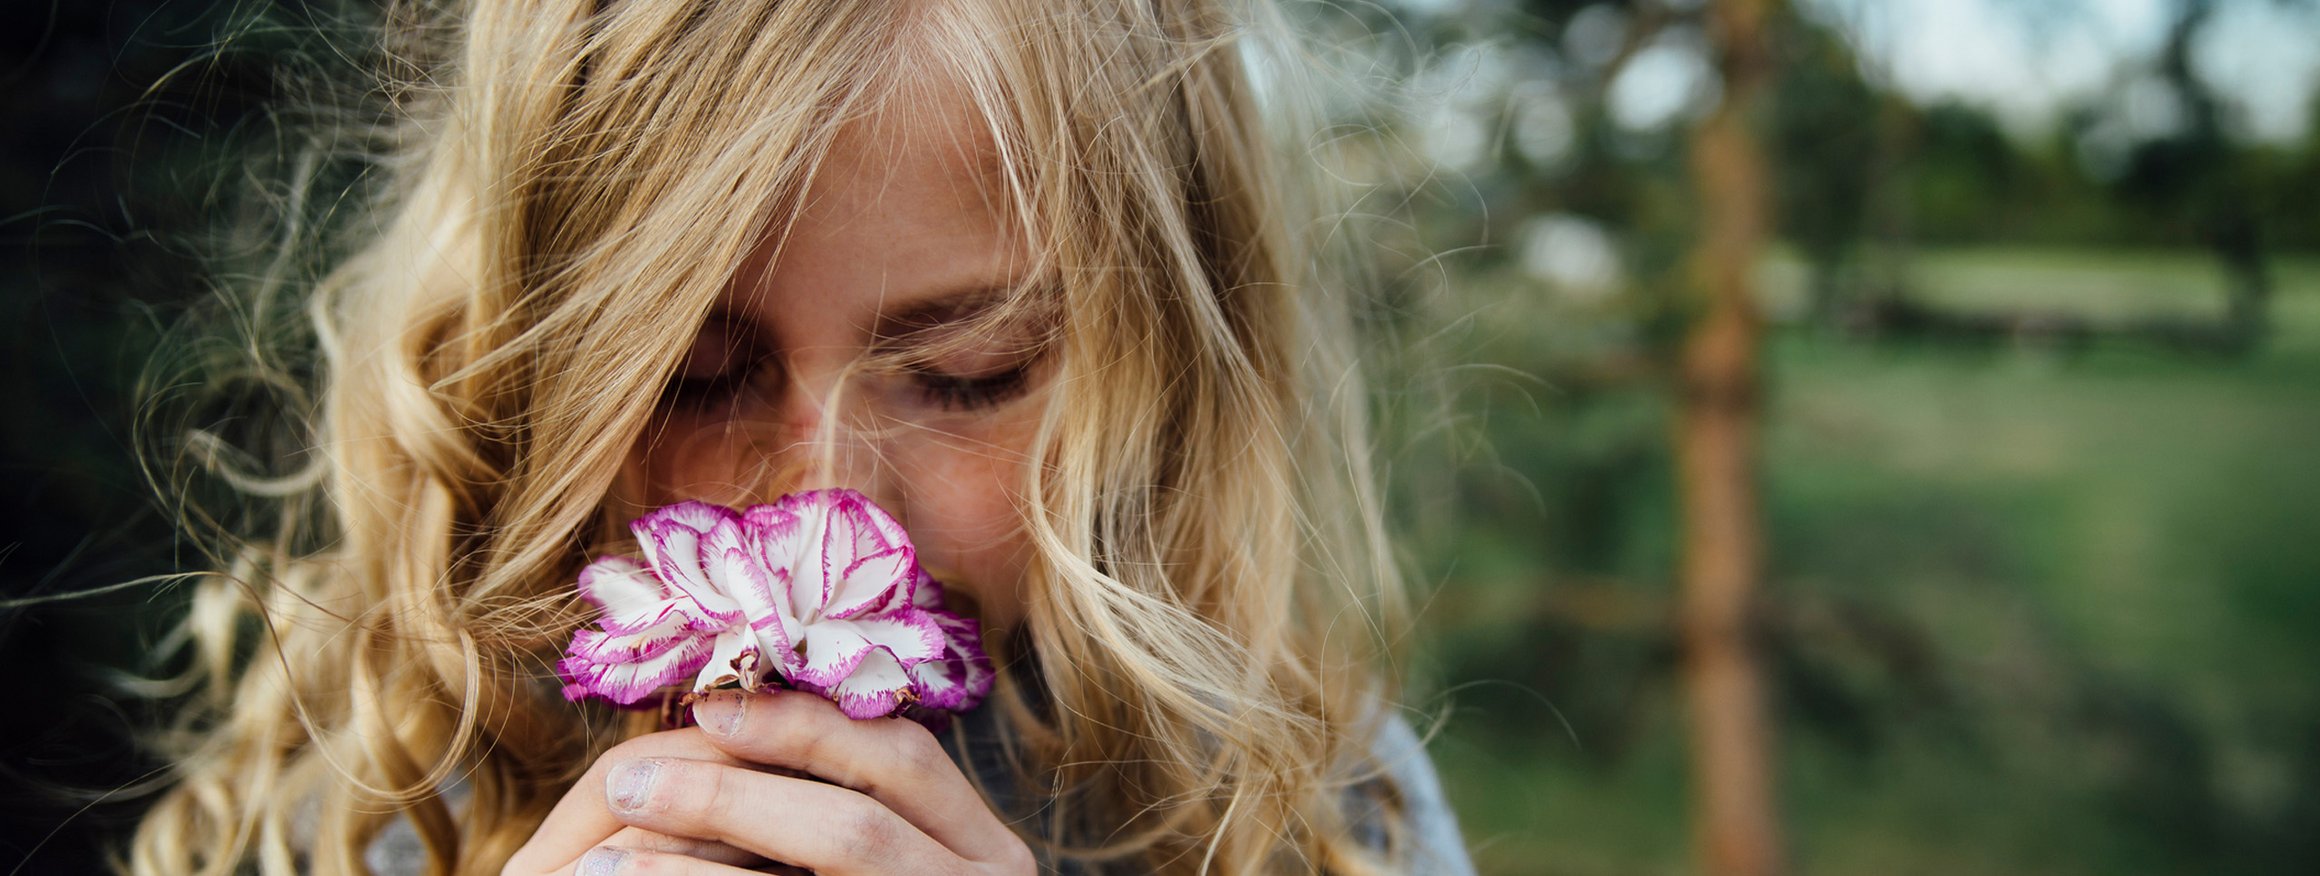 Ein blondes Mädchen mit langen Locken riecht an einer Blume und hat dabei die Augen geschlossen